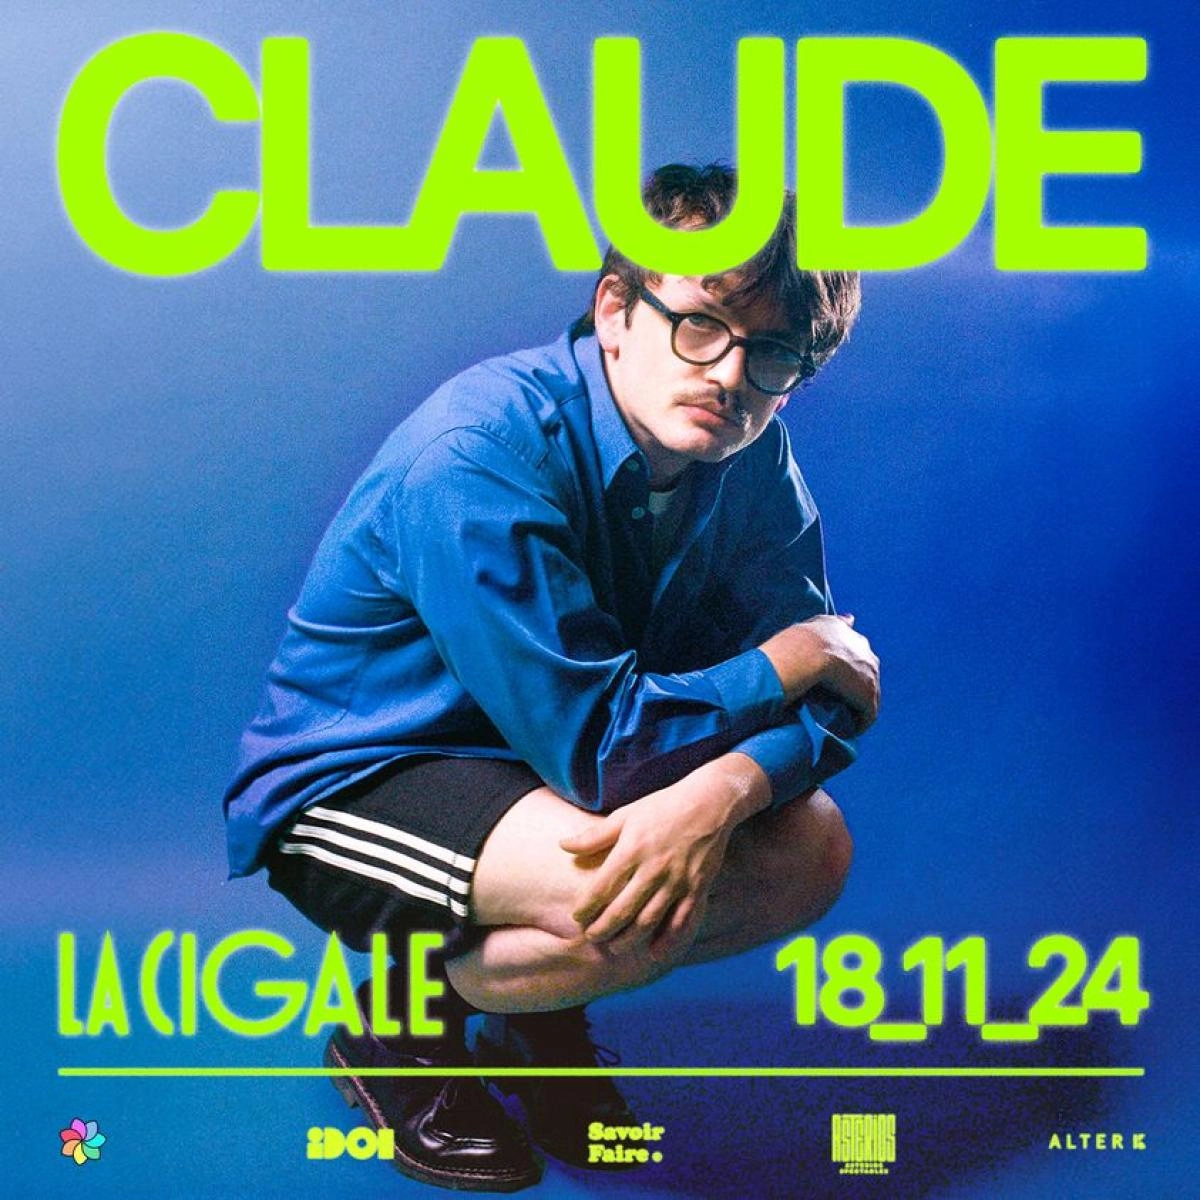 Claude at La Cigale Tickets